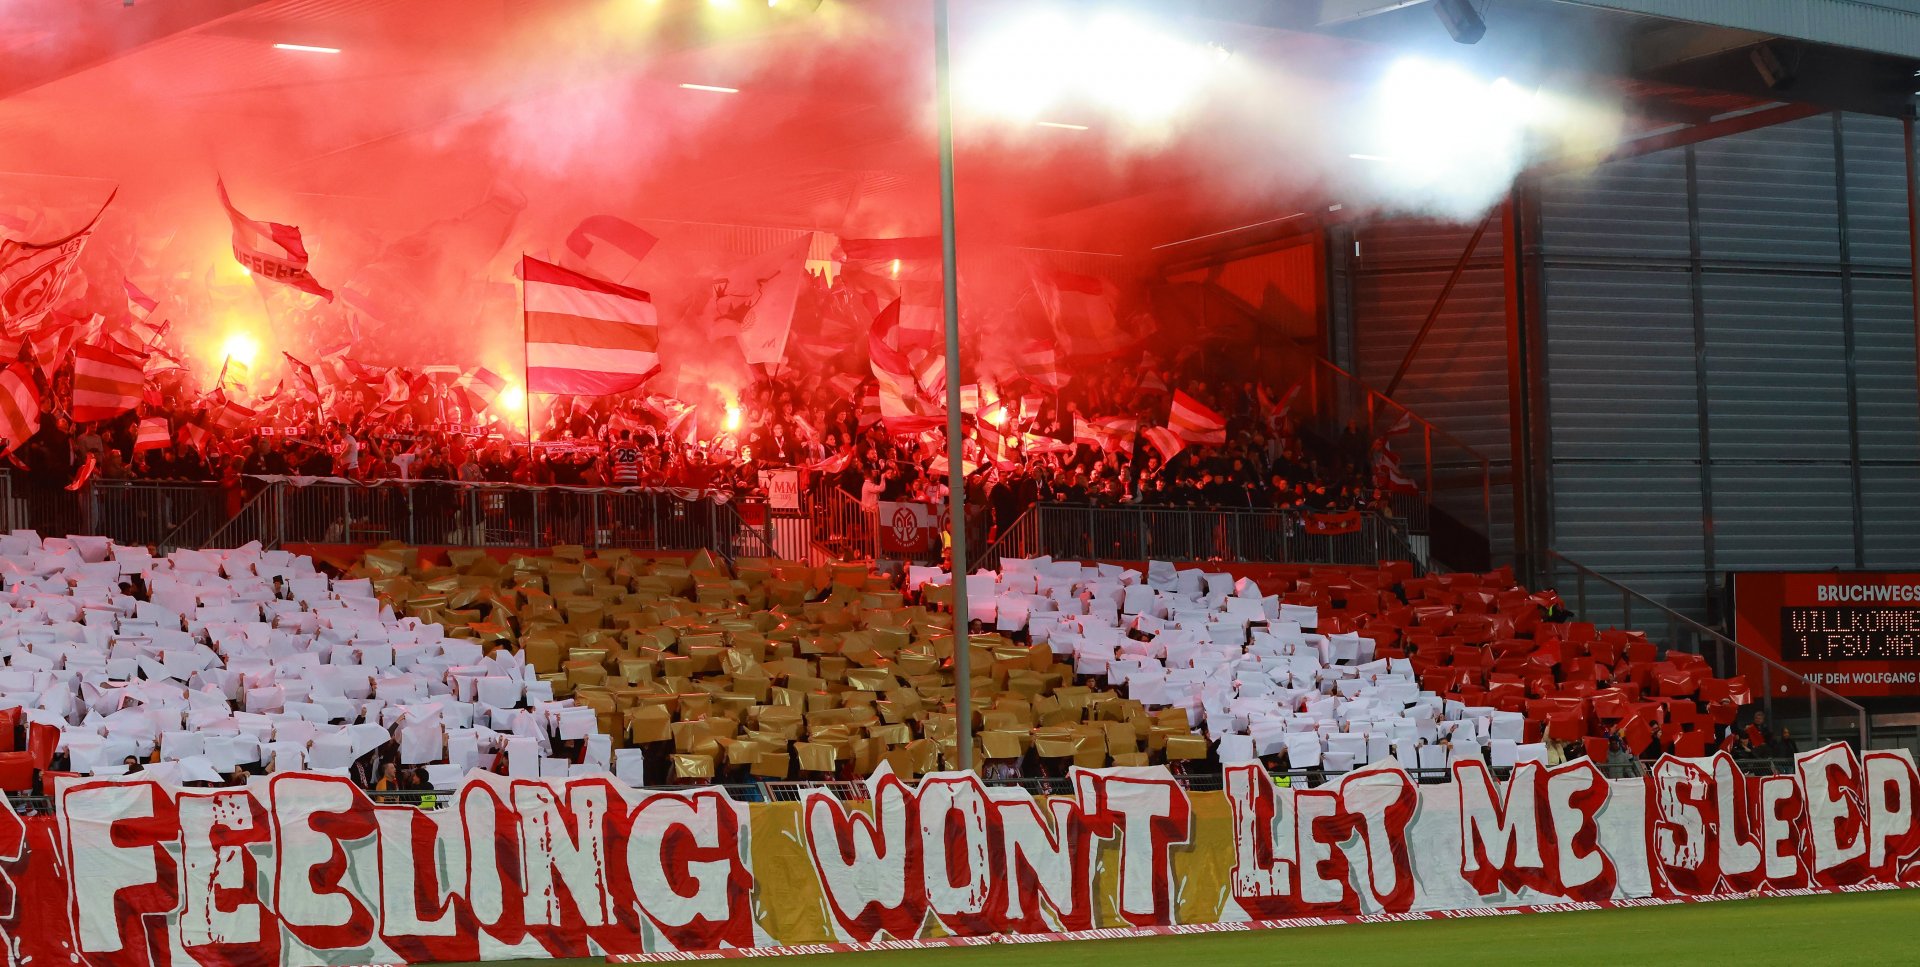 Der Stimmung auf den Tribünen tat die Niederlage keinen Abbruch. Die Fans feierten die ersten Mainzer U-19-Spieler, die es ins internationale Geschäft geschafft hatten, trotz des Ausscheidens wie Champions.